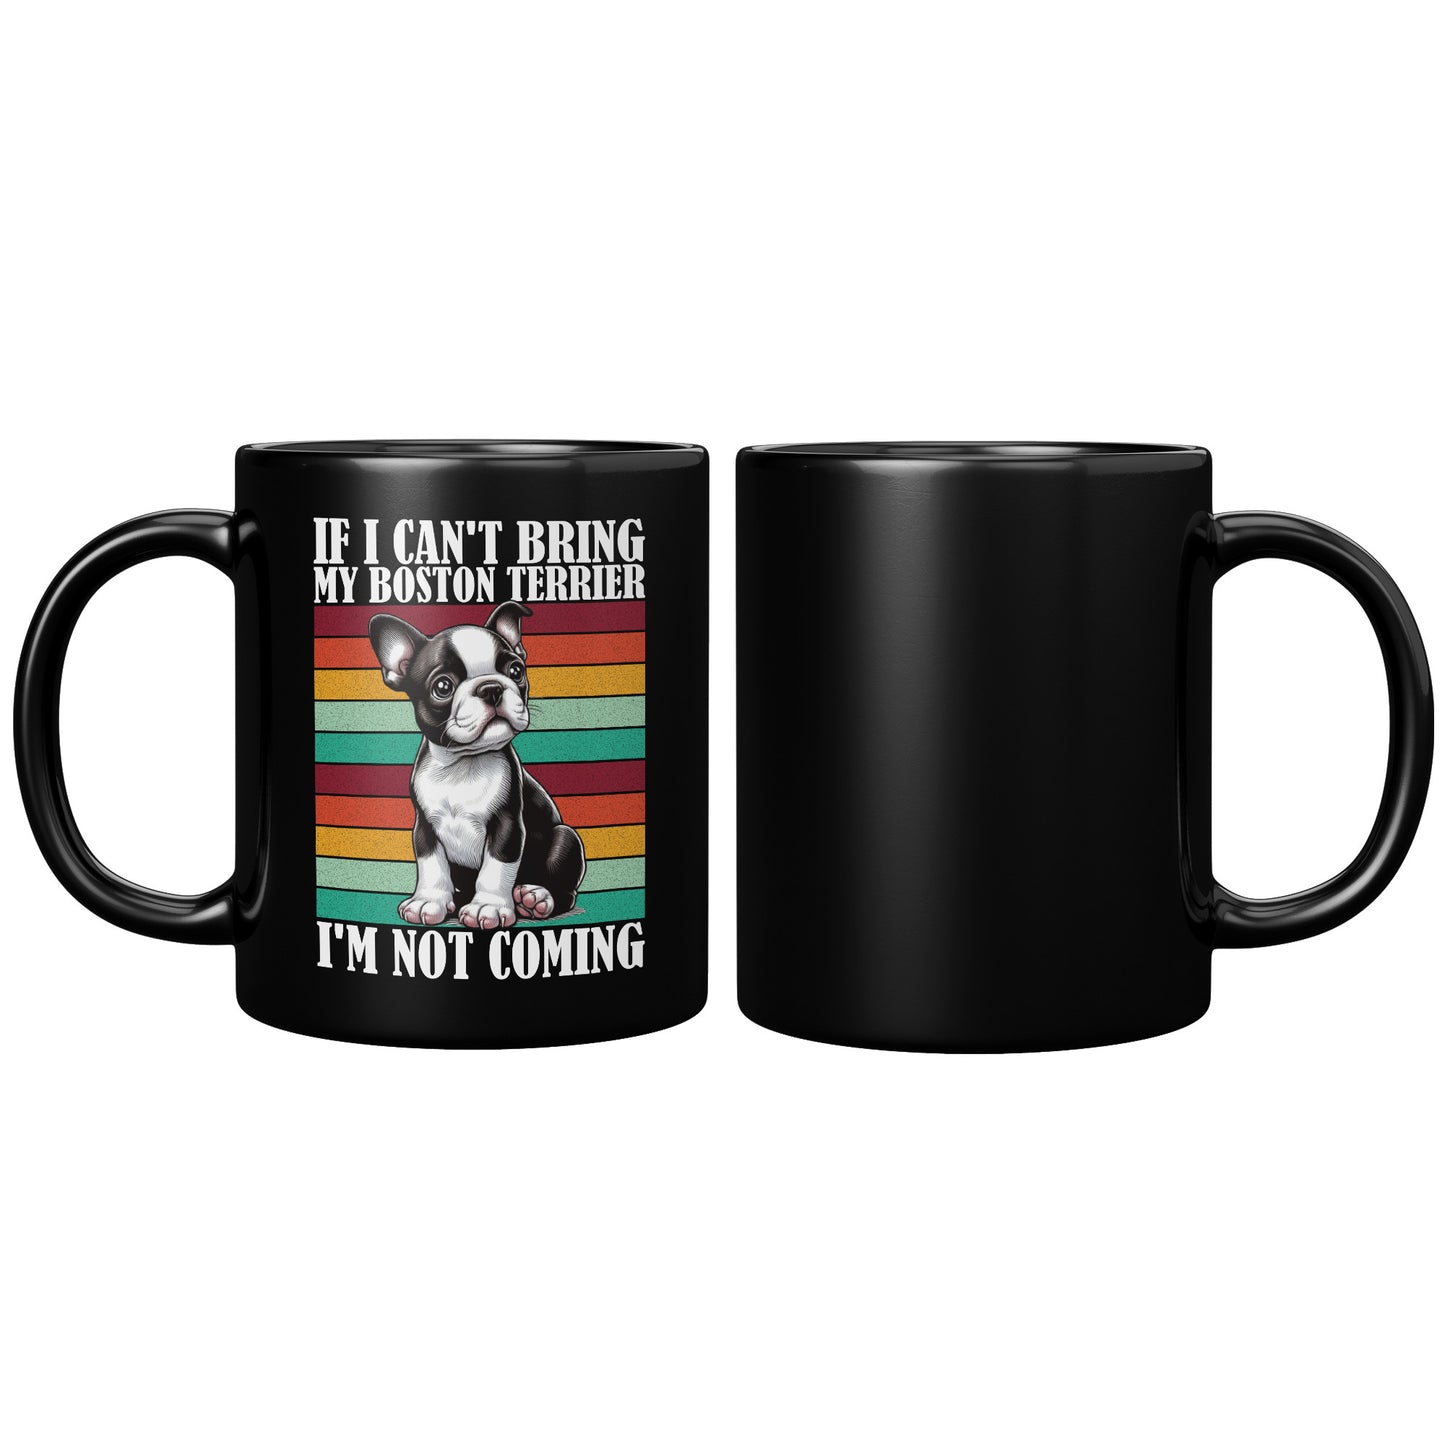 Harper -Mug for Boston Terrier lovers